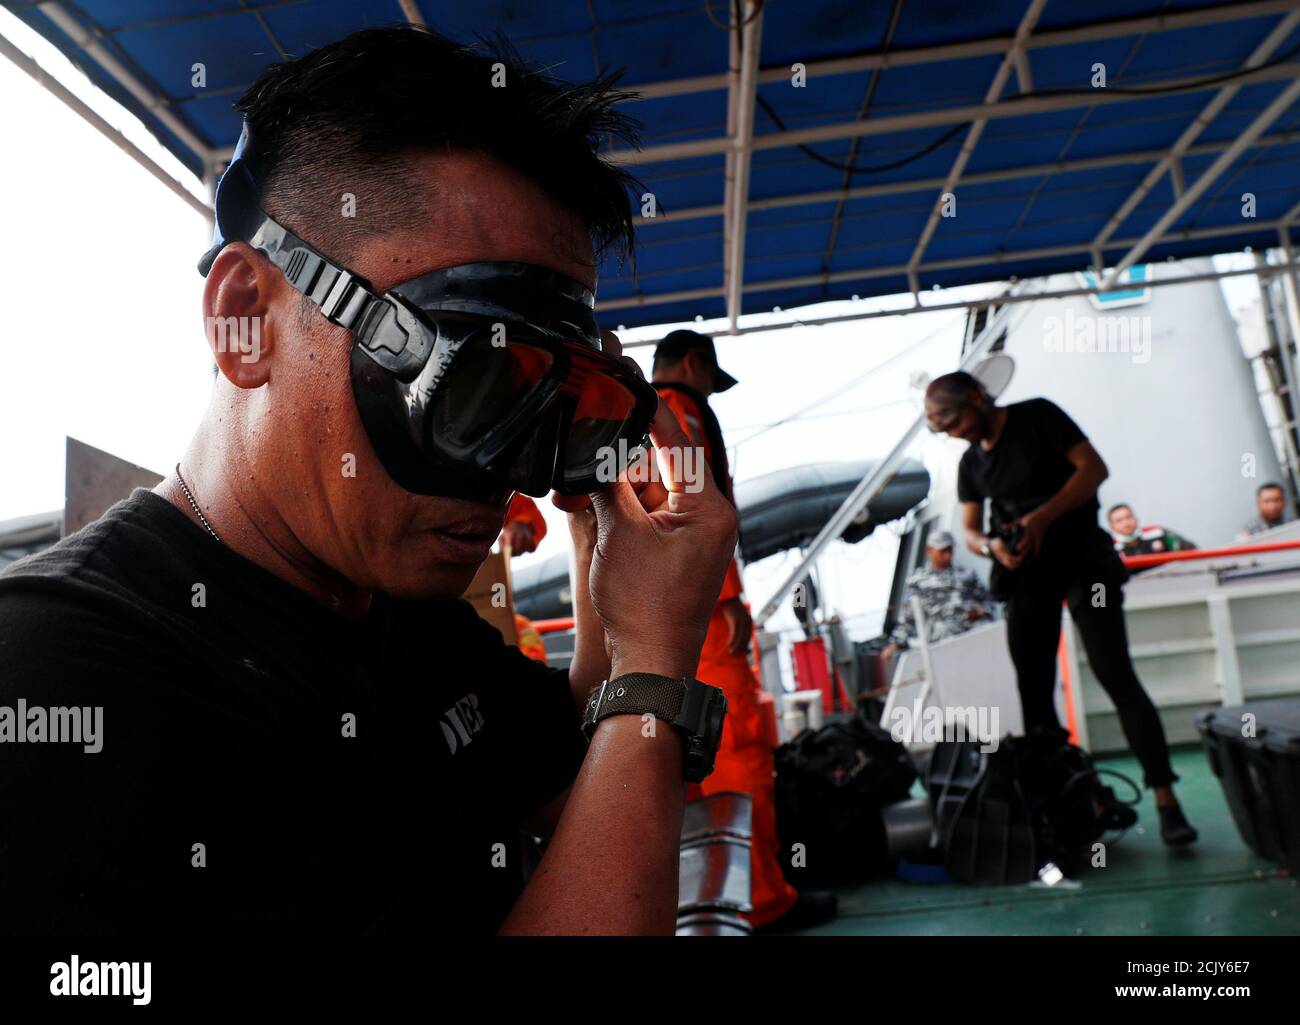 Hendrata Yudha, 50, (L) prepara su equipo antes de una inmersión para confirmar la ubicación del fuselaje del vuelo JT610 de Lion Air en un área de búsqueda en aguas de Karawang, Indonesia, 31 de octubre de 2018. REUTERS/Edgar su Foto de stock